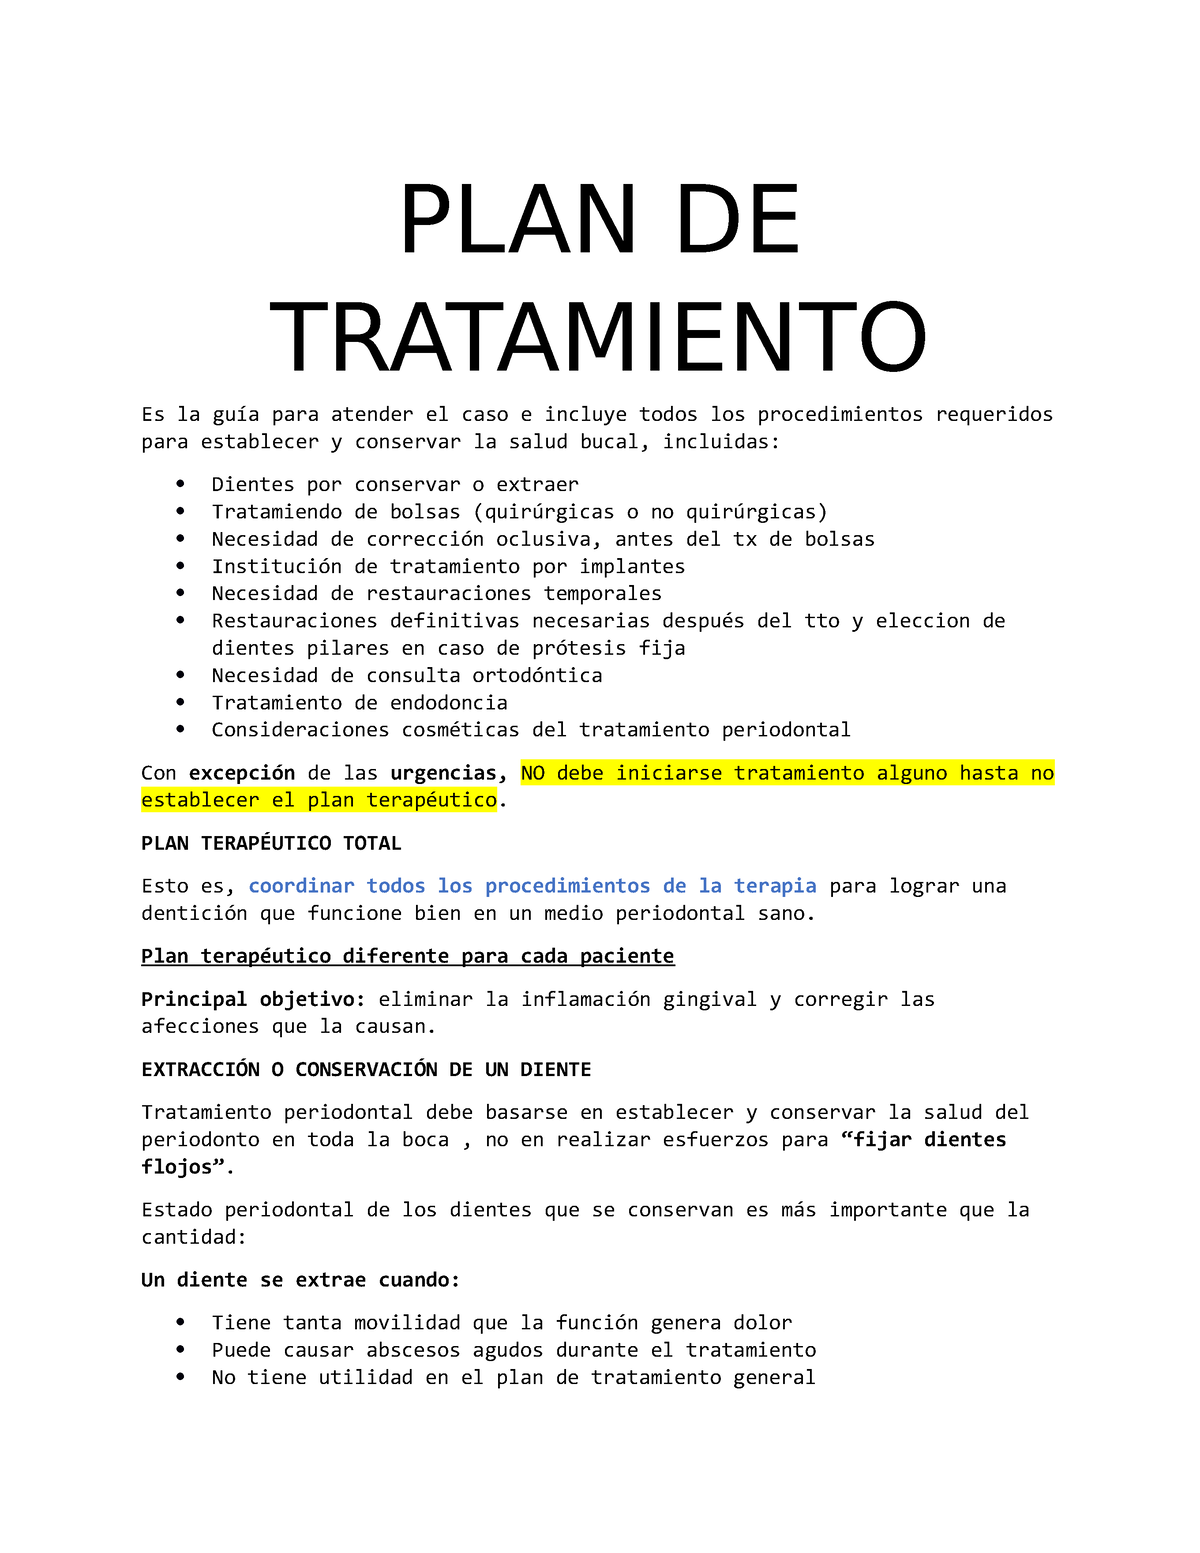 2 Plan De Tratamiento Clínica De Periodoncia Planes De Tratamiento Plan De Tratamiento Es 4978